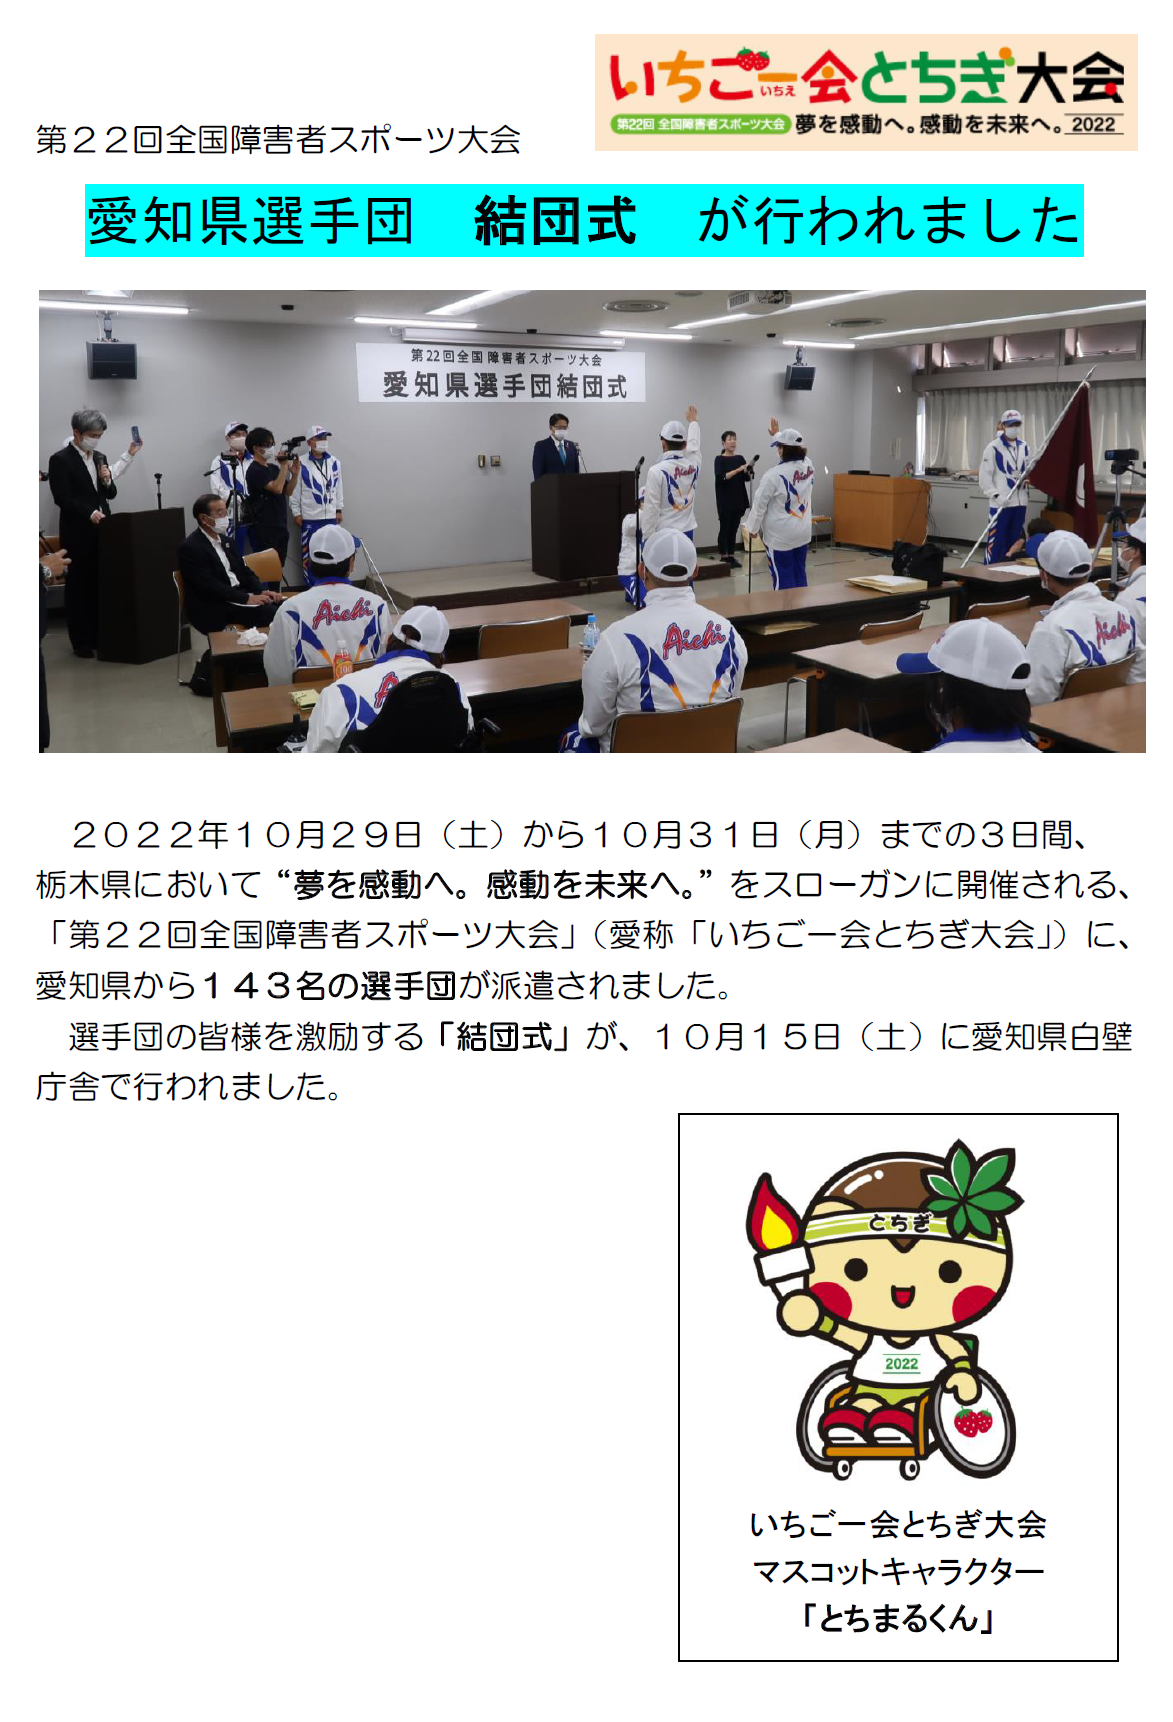 愛知県選手団結団式がおこなわれました。　２０２２年１０月２９日（土）から１０月３１日（月）までの３日間、 栃木県において“夢を感動へ。感動を未来へ。”をスローガンに開催される、「第２２回全国障害者スポーツ大会」（愛称「いちご一会とちぎ大会」）に、愛知県から１４３名の選手団が派遣されました。 選手団の皆様を激励する「結団式」が、１０月１５日（土）に愛知県白壁庁舎で行われました。